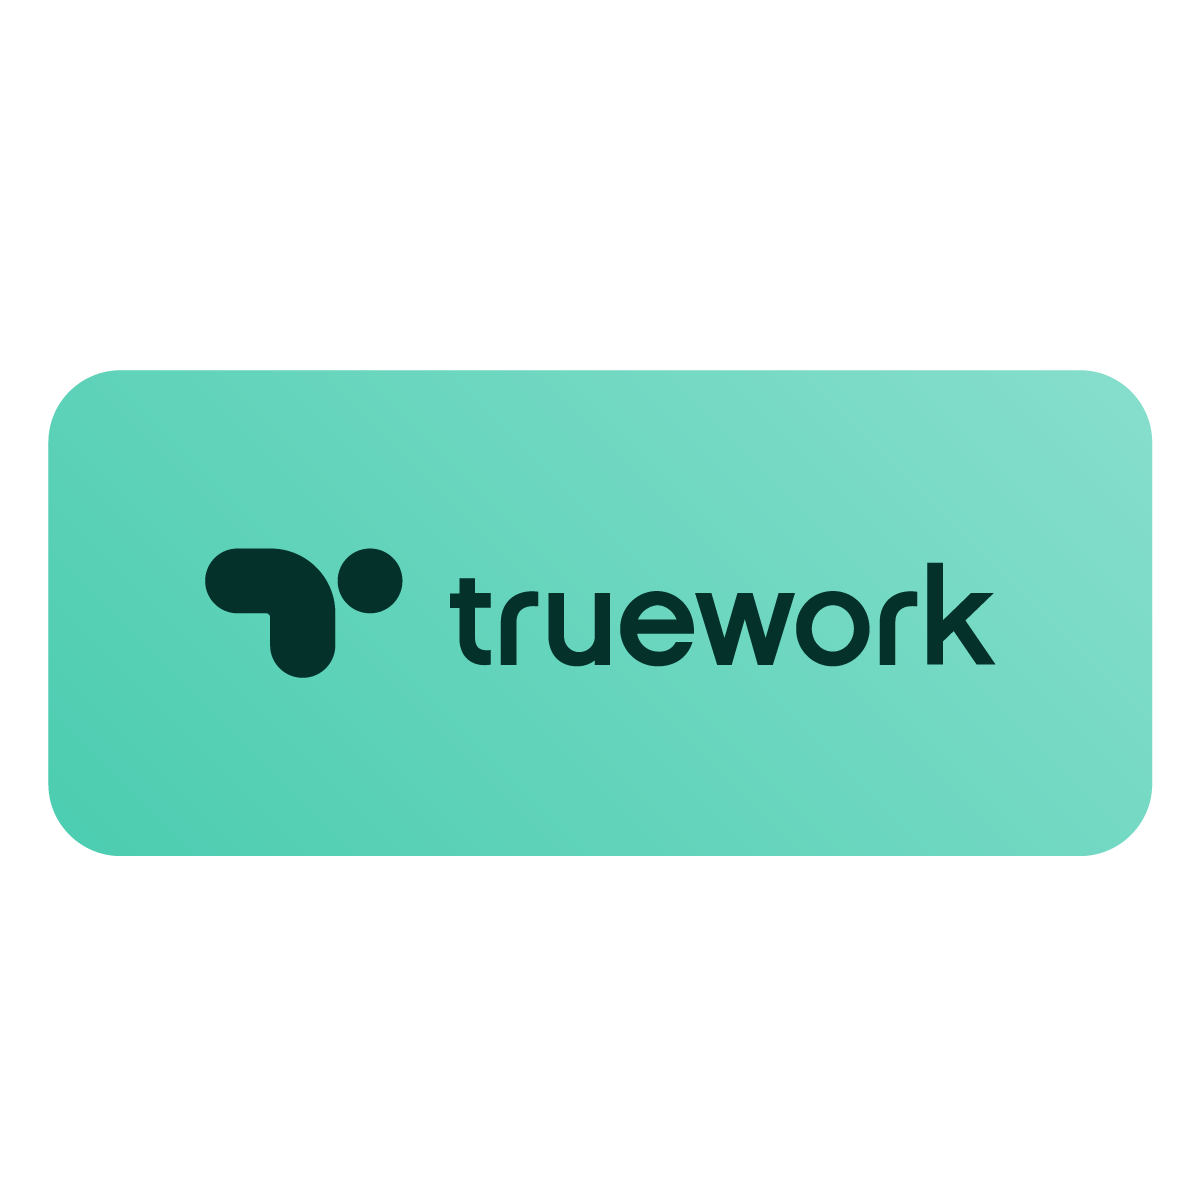 Truework Brand Refresh